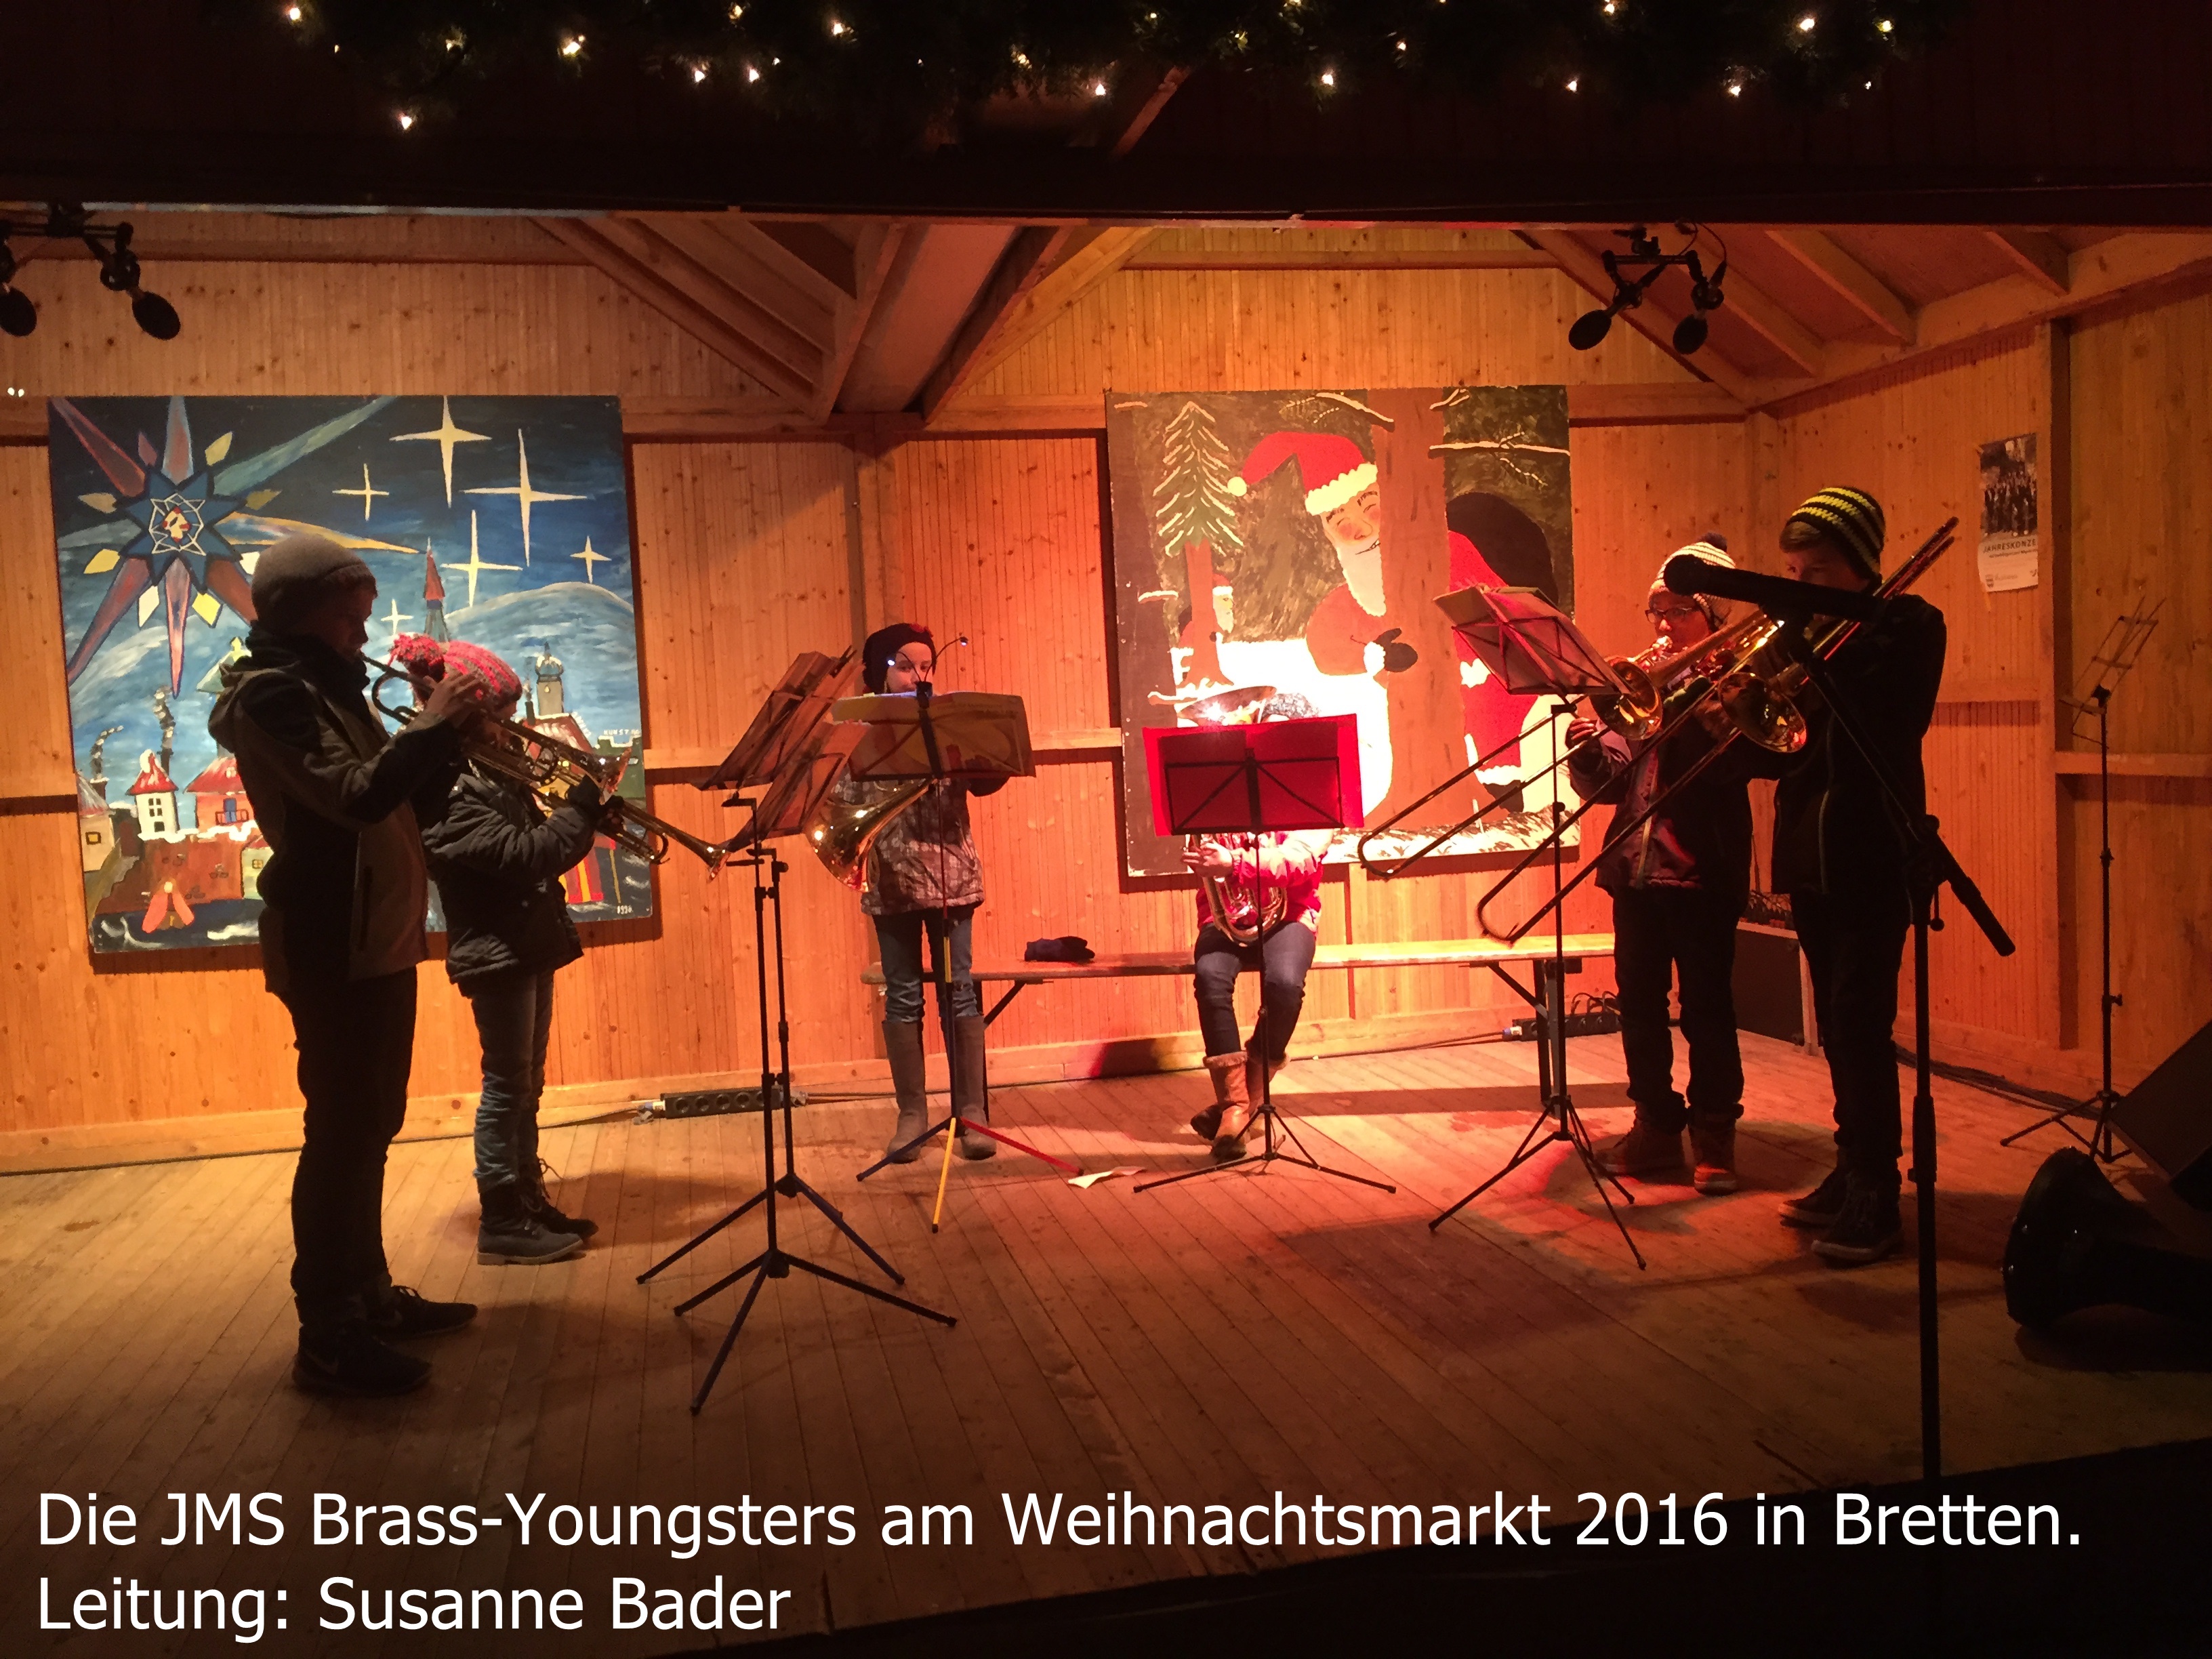 Ensemble-Bader-Weihnachtsmarkt-Bretten-2016.JPG